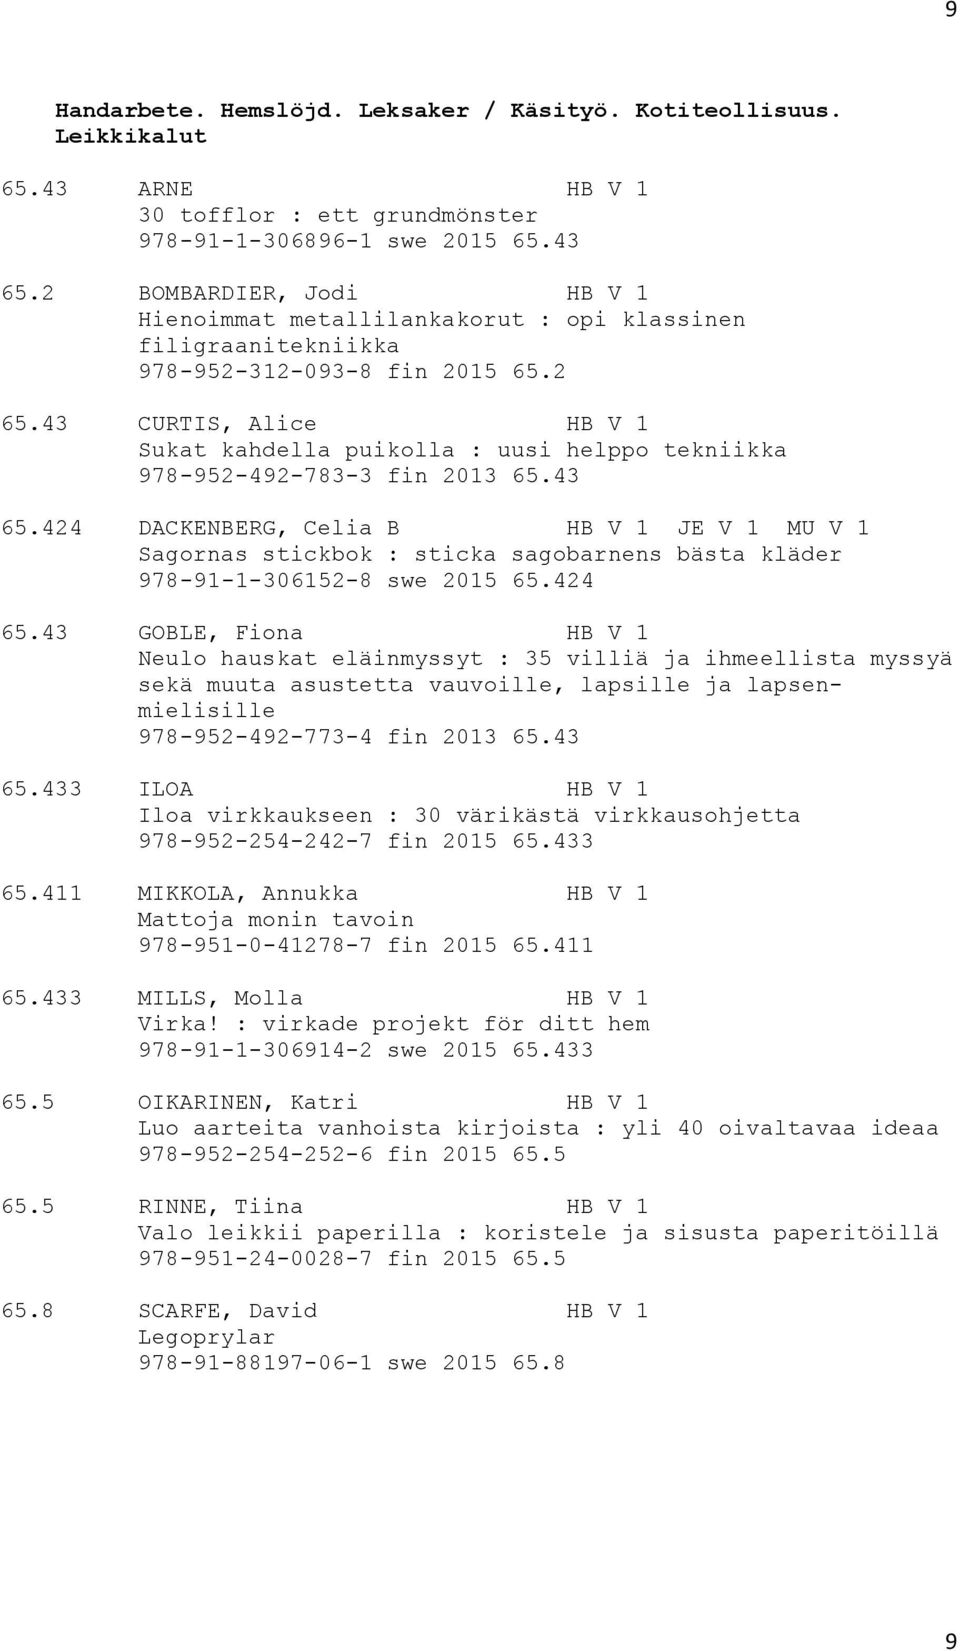 43 CURTIS, Alice HB V 1 Sukat kahdella puikolla : uusi helppo tekniikka 978-952-492-783-3 fin 2013 65.43 65.